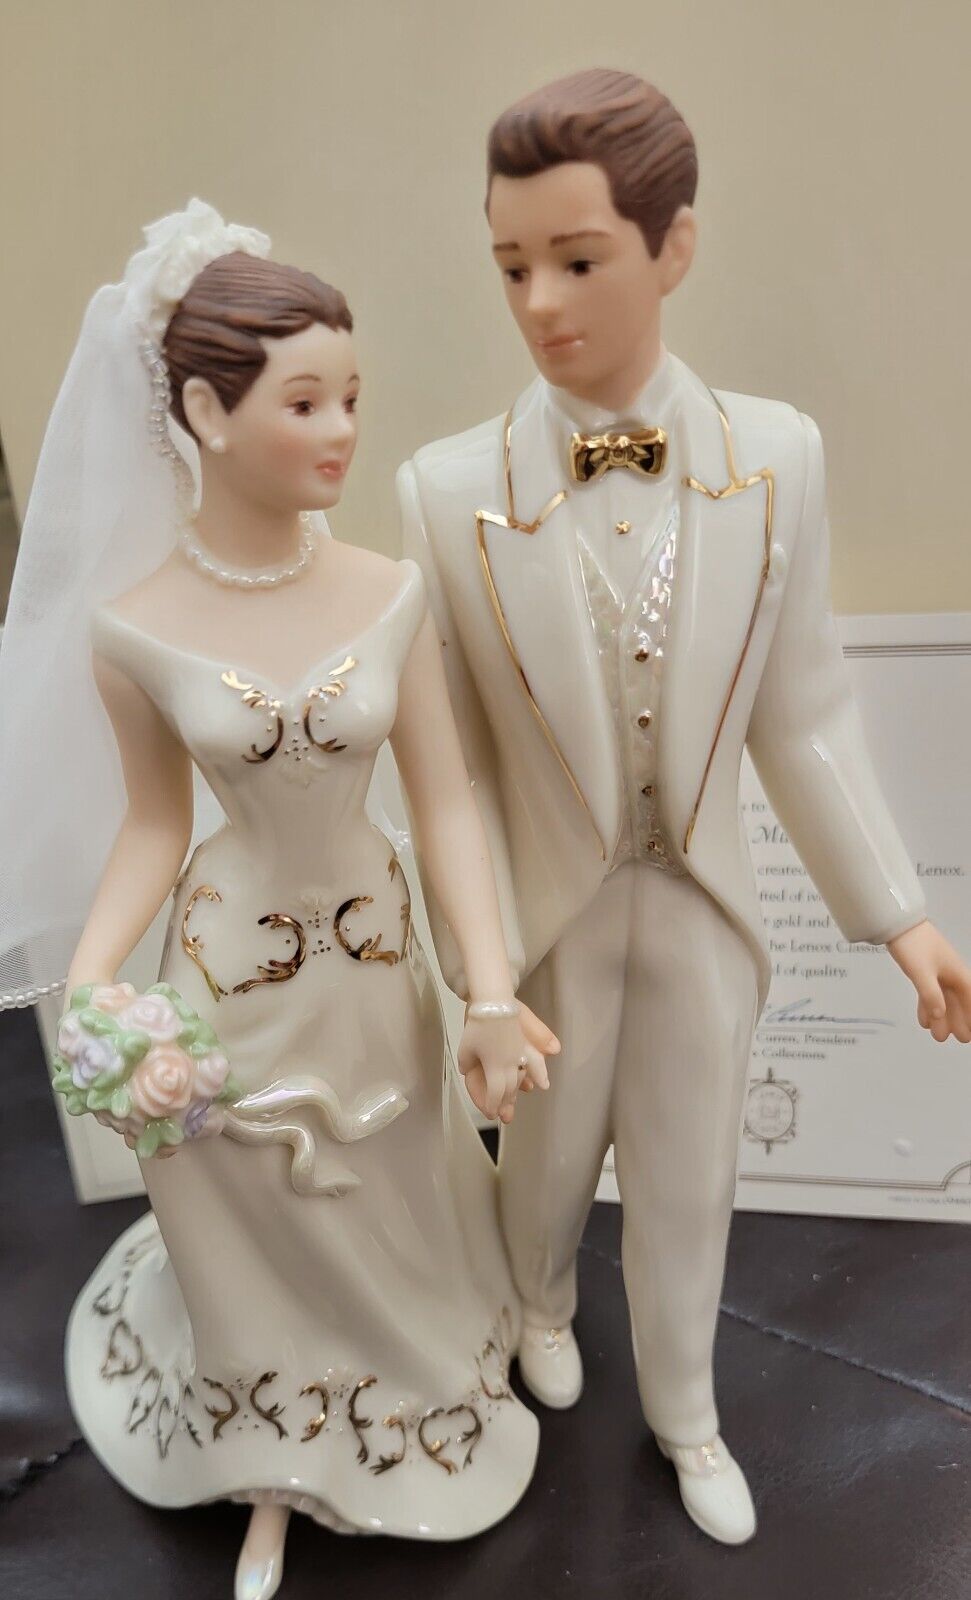 LENOX JUST MARRIED BRIDE & GROOM FIGURINE NIB IST QUALITY